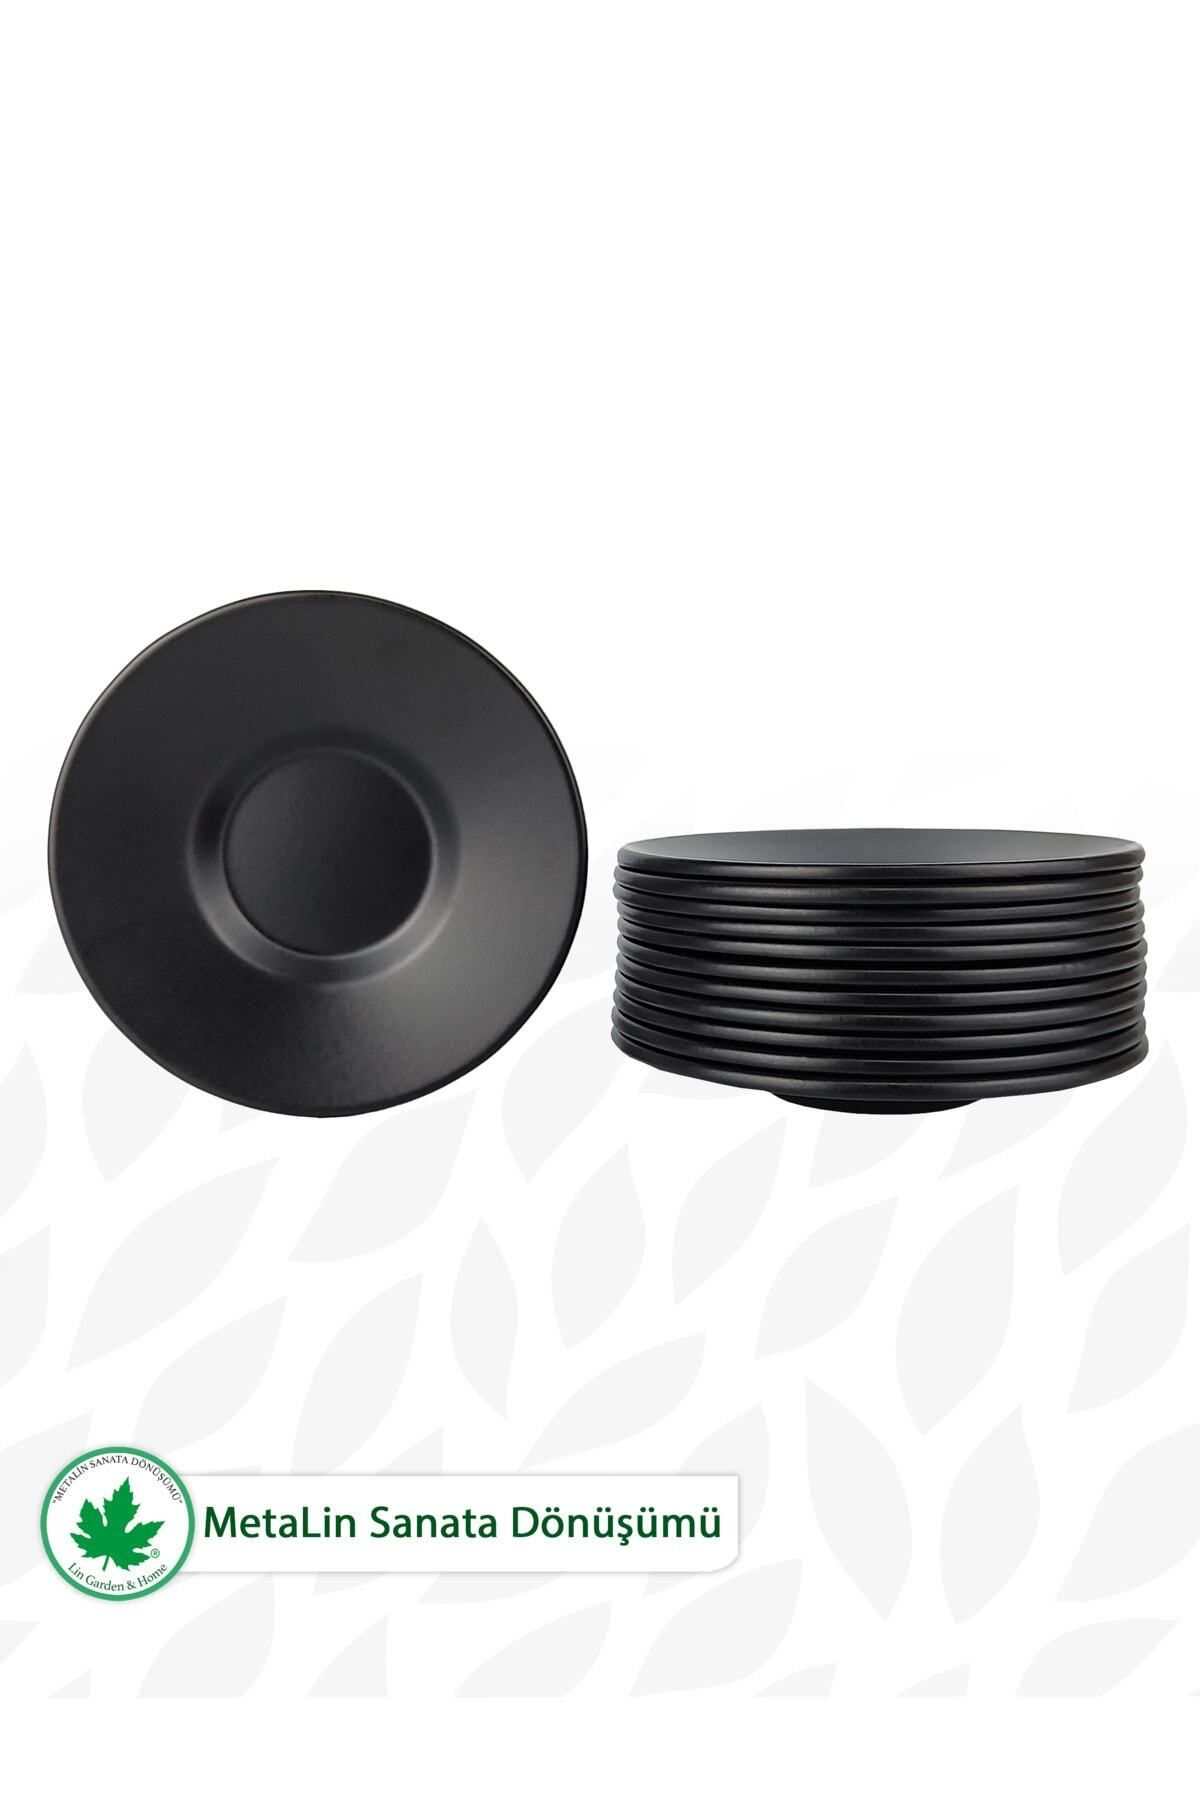 teknotrust Siyah 12'li Metal Çay Tabağı Çay Tabağı 6+ Galvaniz Modern BPA Free Yuvarlak